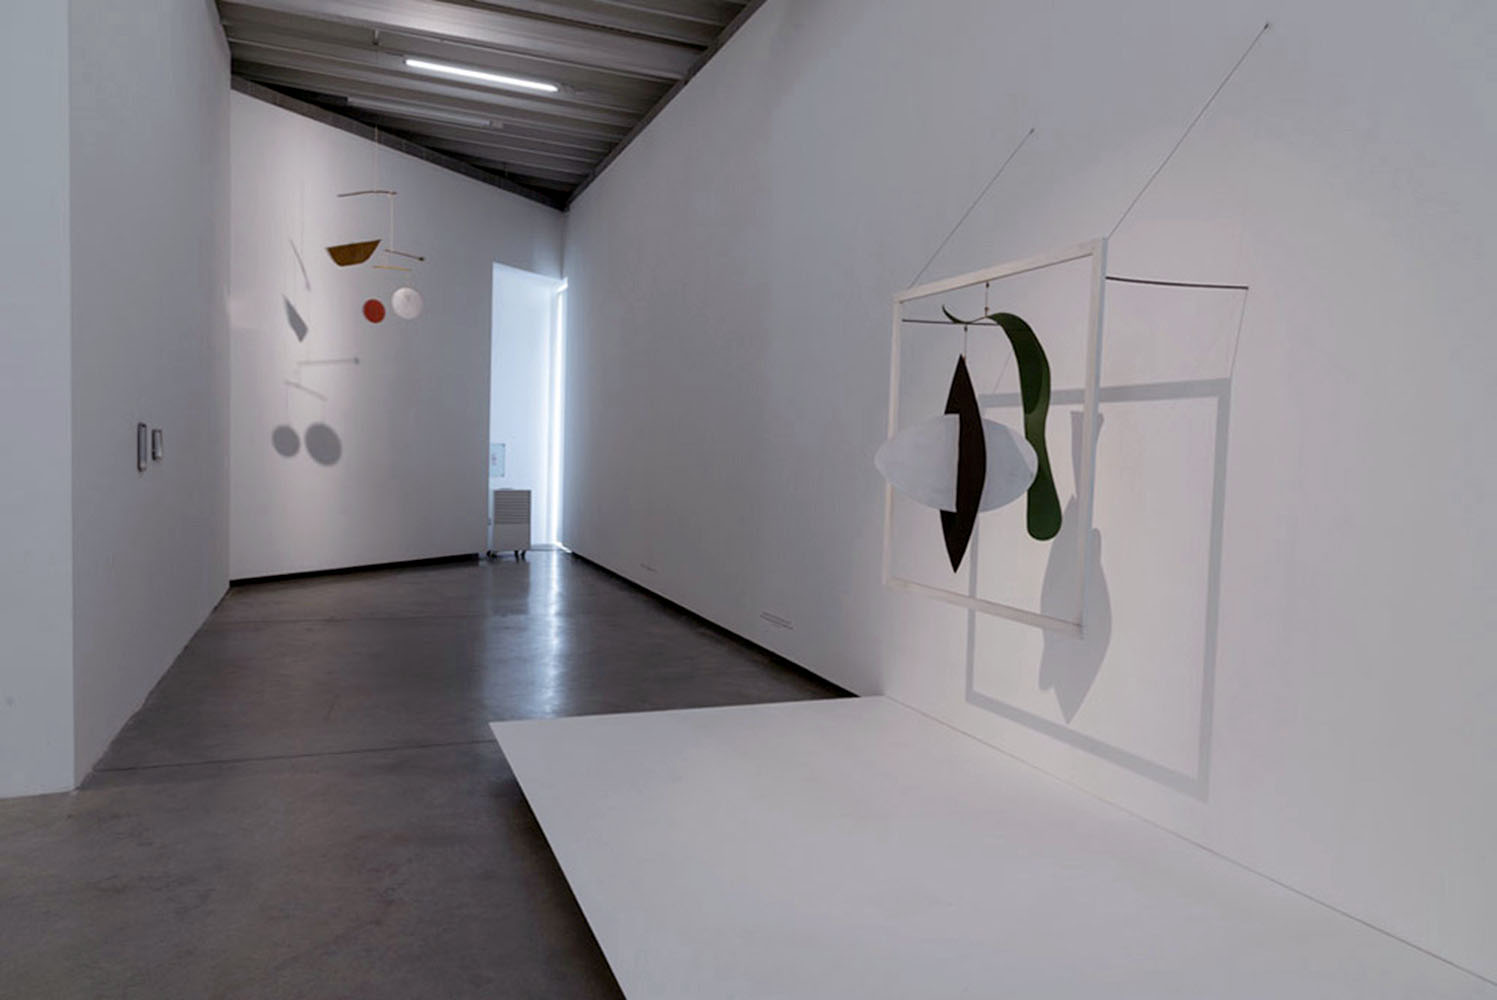 Vista de la exposición "Alexander Calder: Teatro de Encuentros", en Fundación PROA, Buenos Aires, 2018. Foto cortesía de PROA